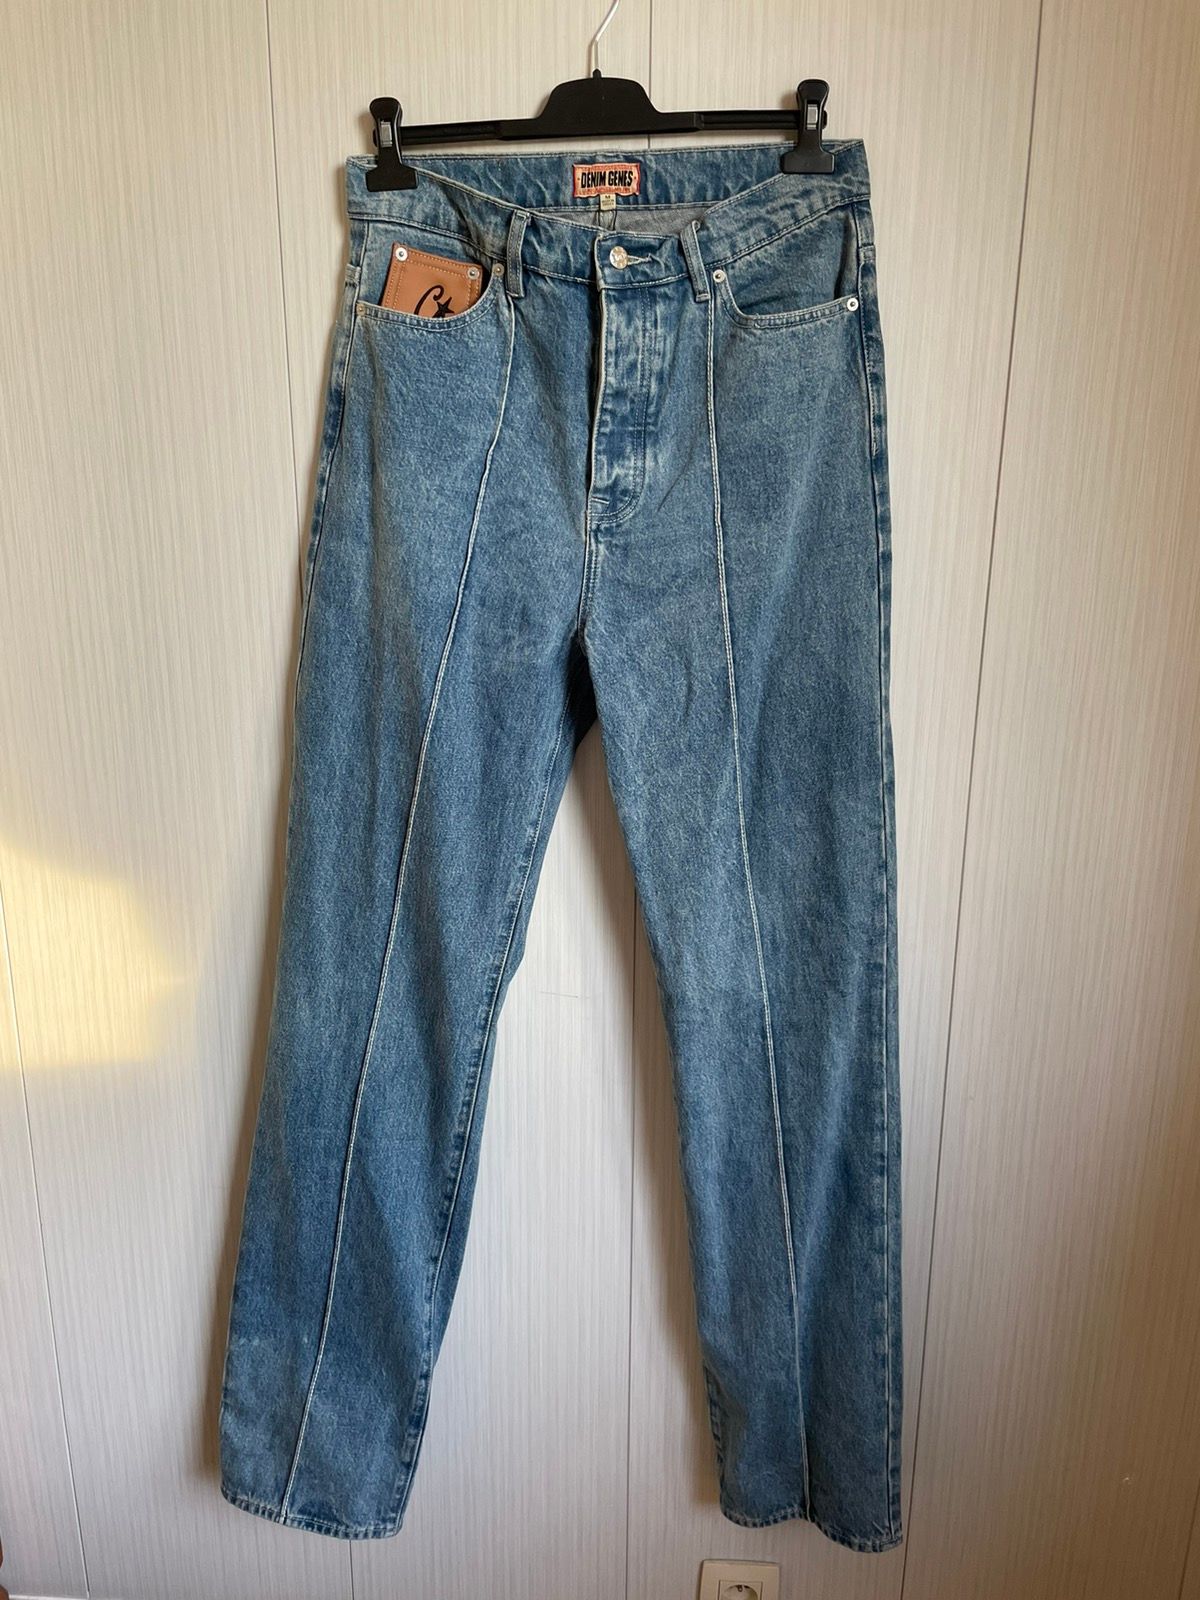 Corteiz Corteiz stacked straight denim jeans | Grailed